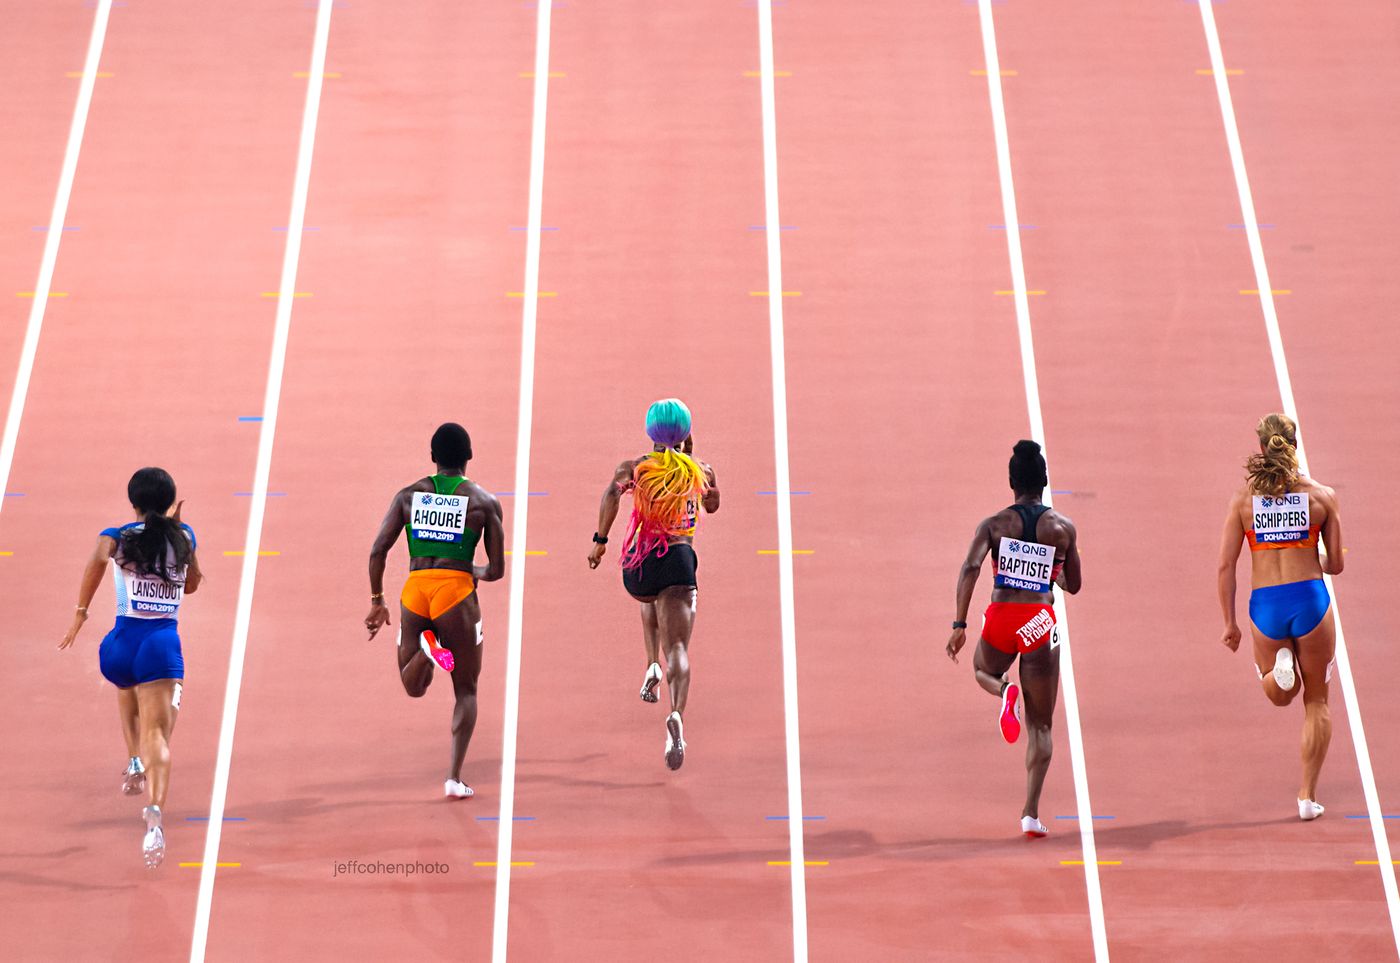 2019 IAAF WORLD ATHLETCS CHAMPIONSHIPS DOHA, QATAR